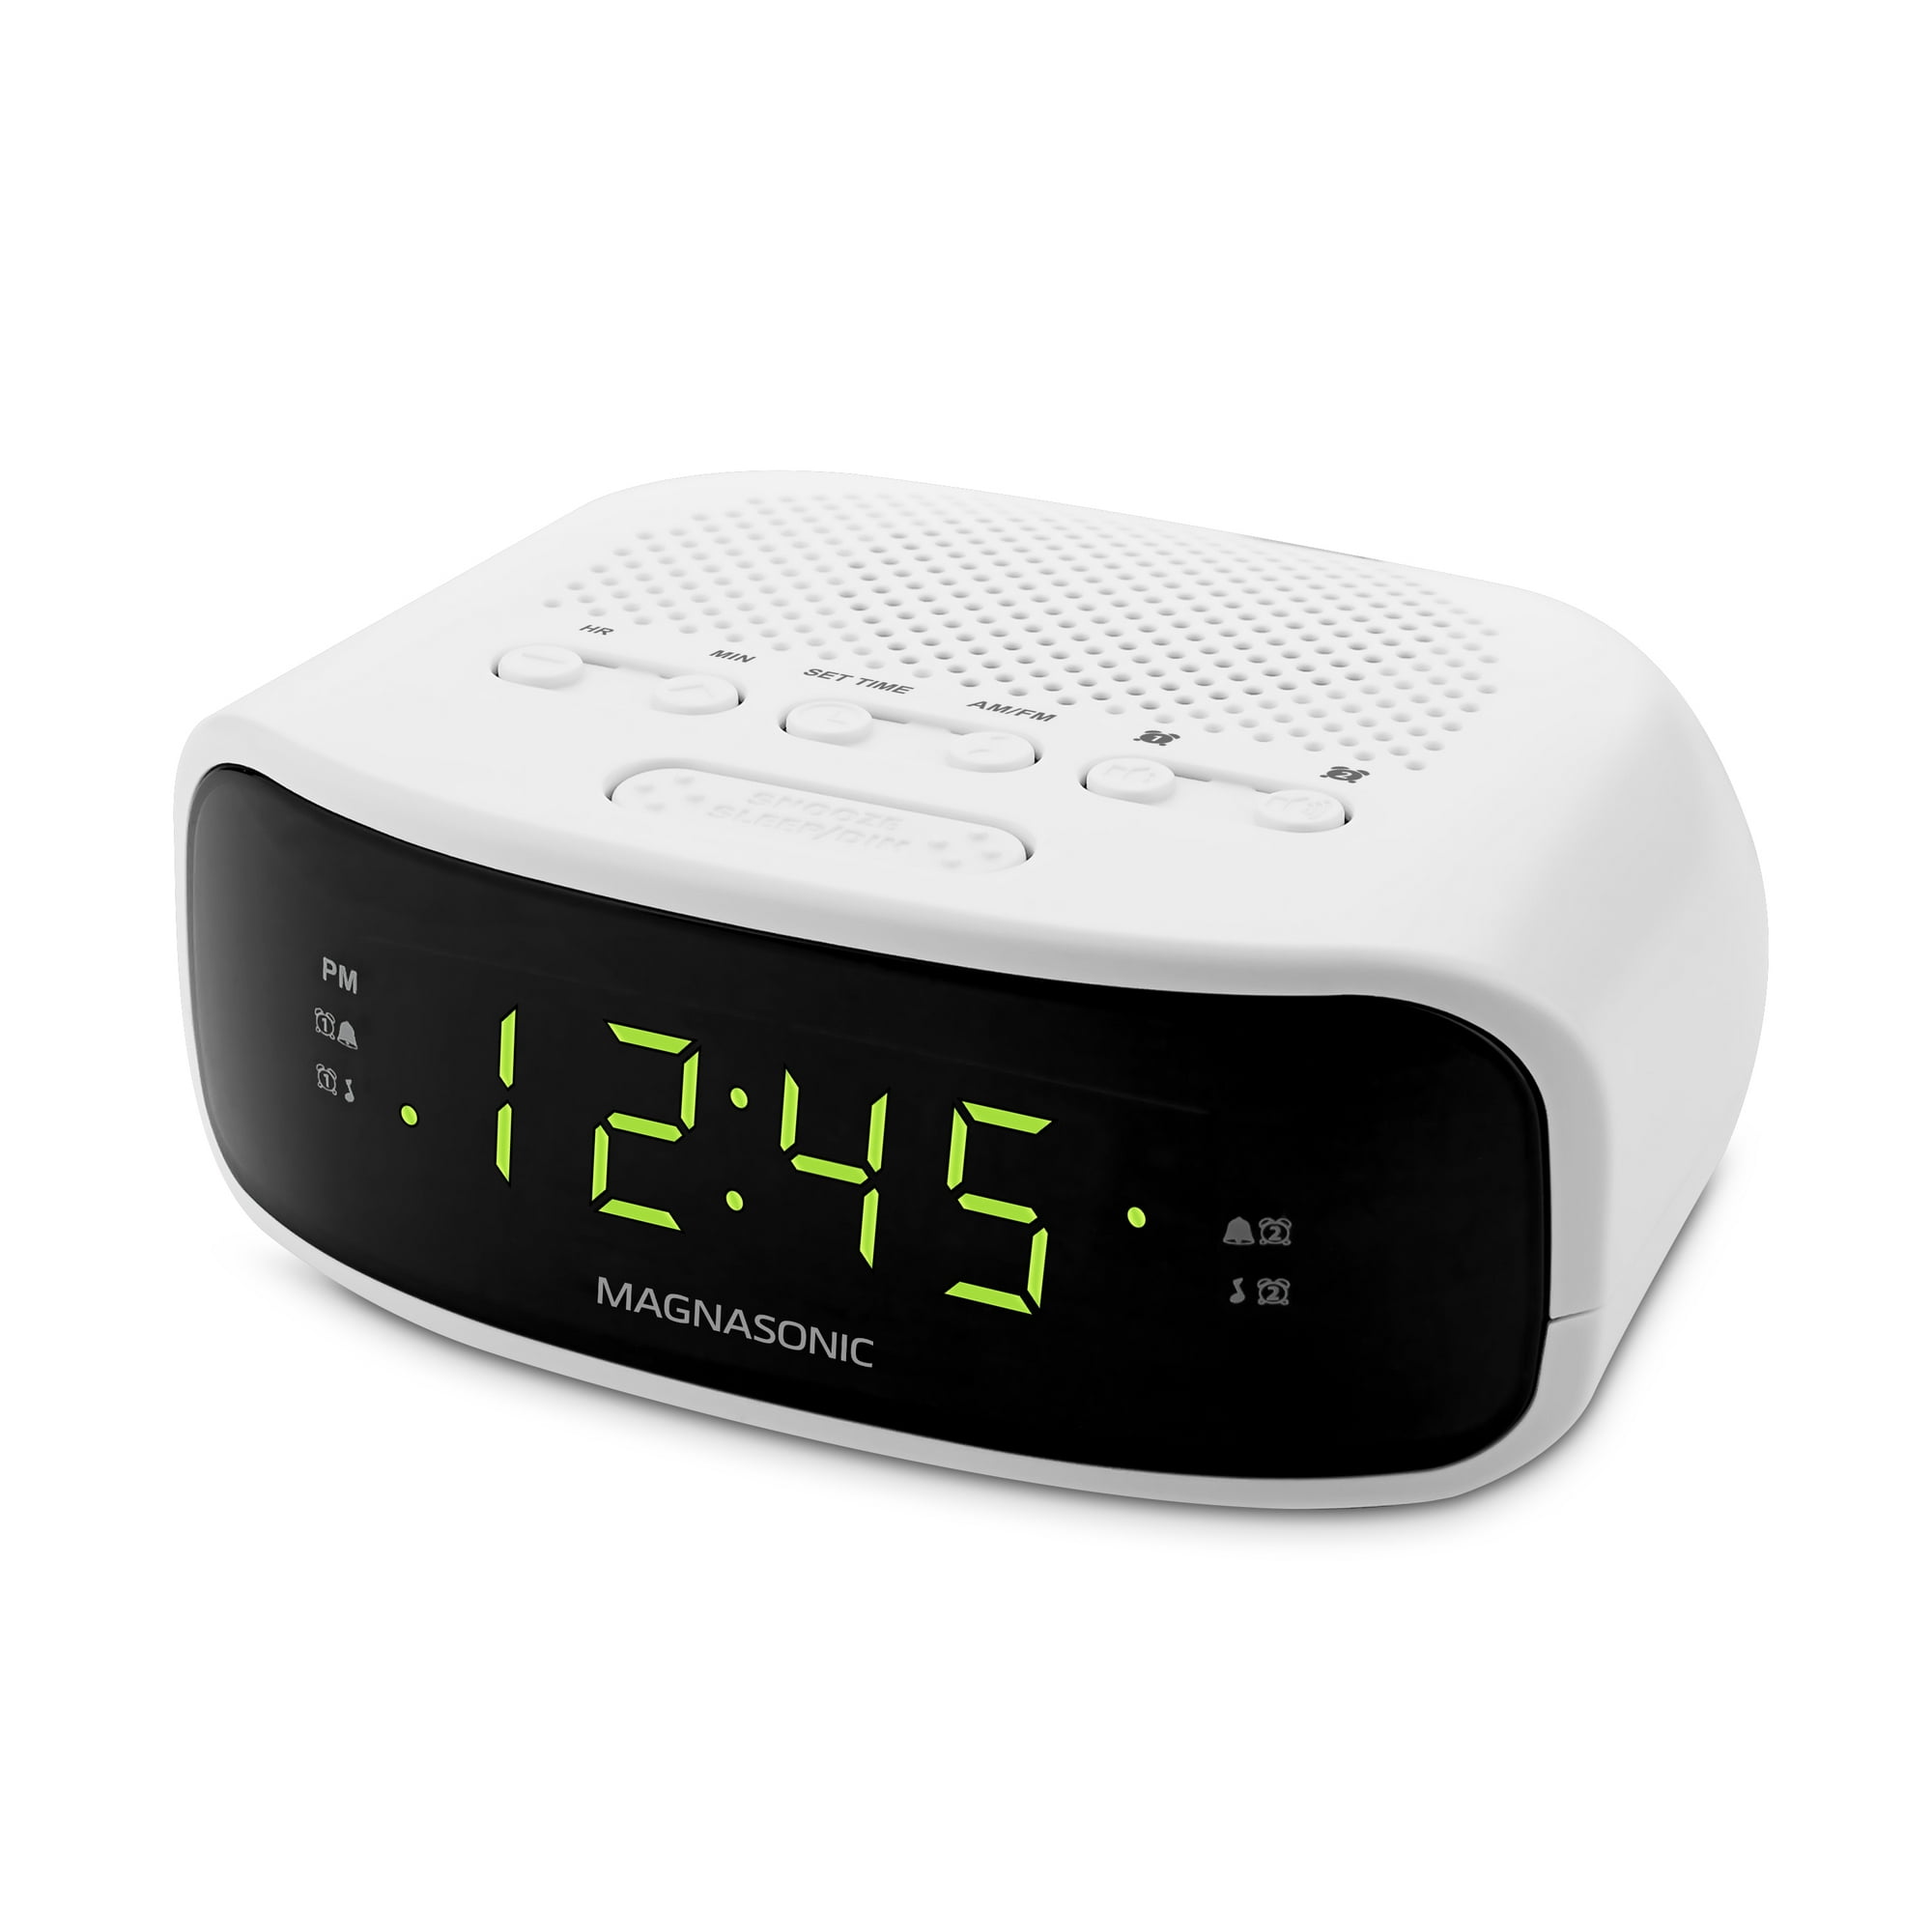 Часа без радио. Радиочасы Snooze model 299. Elco радиочасы-будильник. Digital Clock Radio будильник. Цифровой будильник (Snooze).